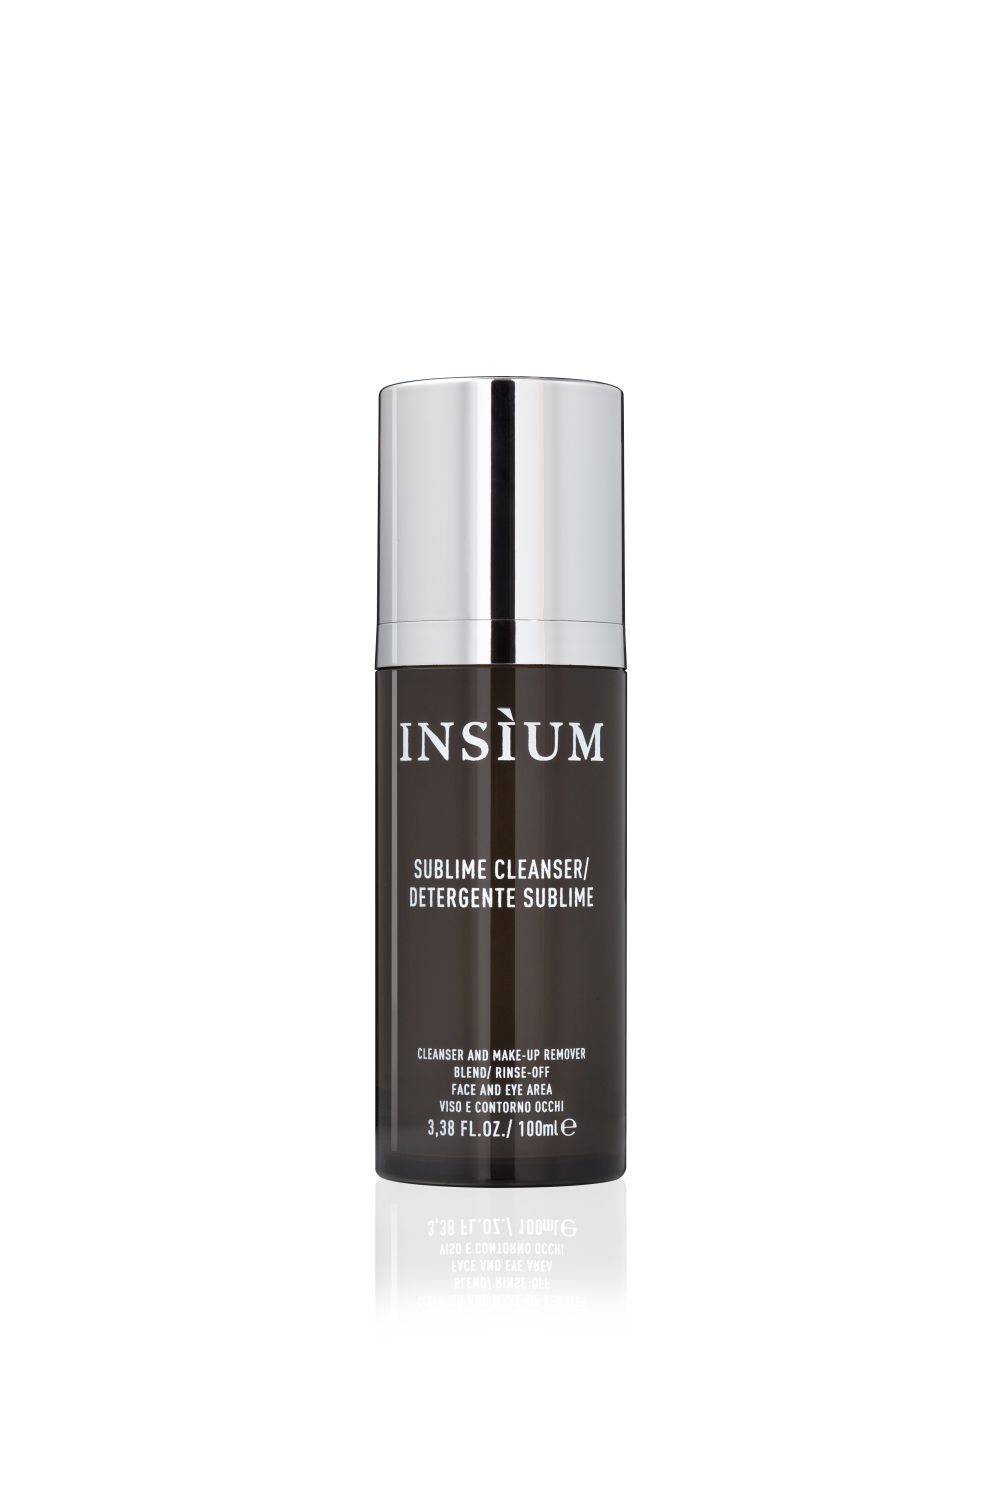 Insium - Sublime Cleanser - Gesichtsreiniger 100 ml